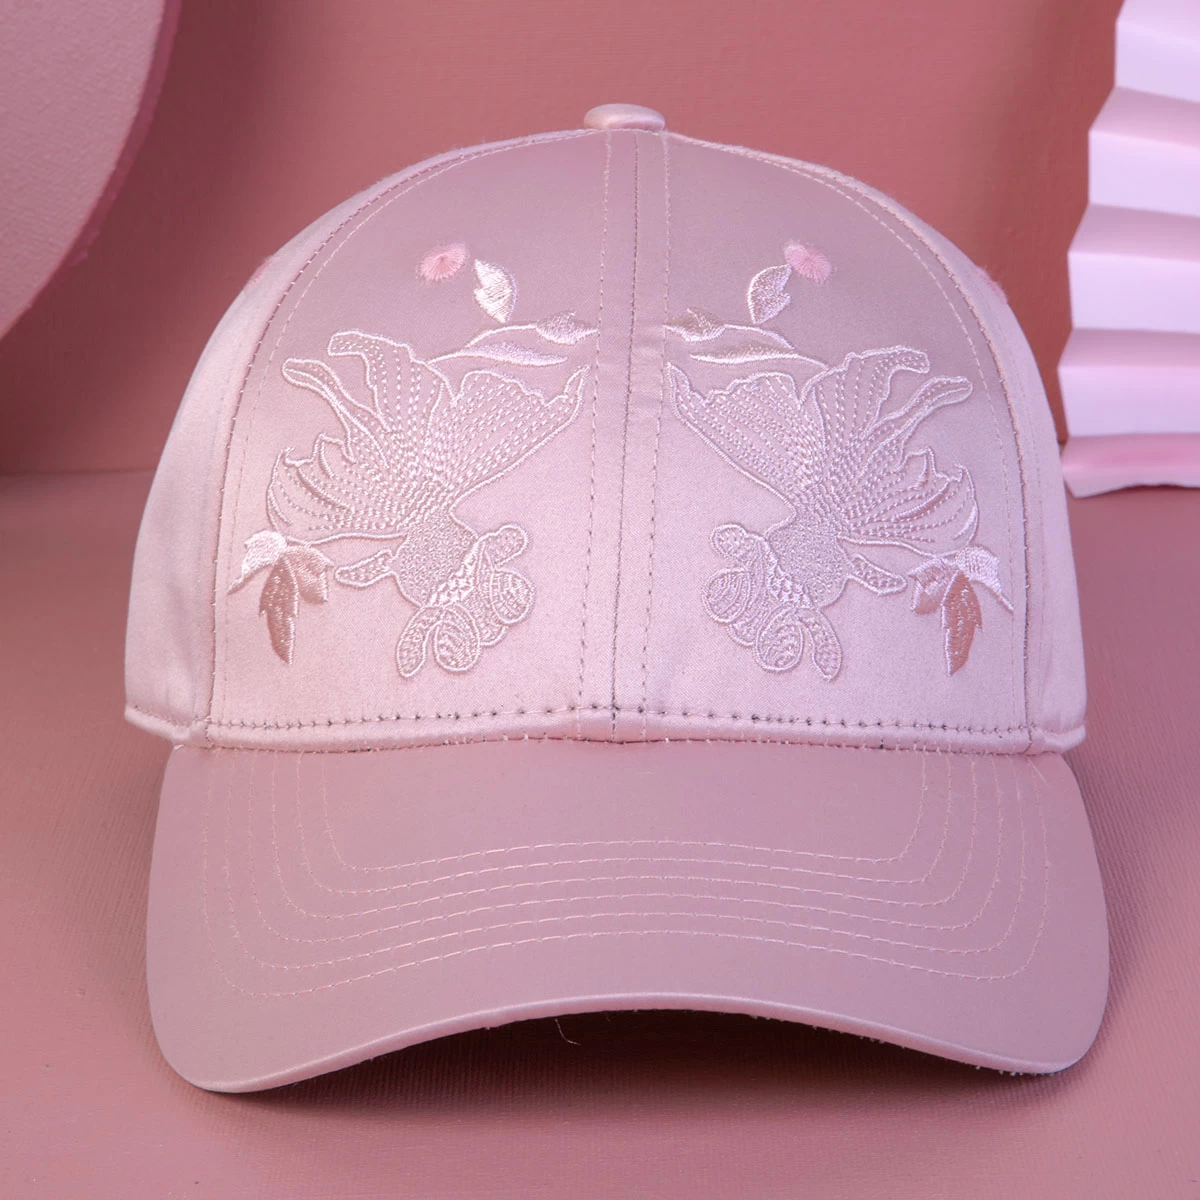 中国 平面刺绣运动棒球帽设计徽标 制造商